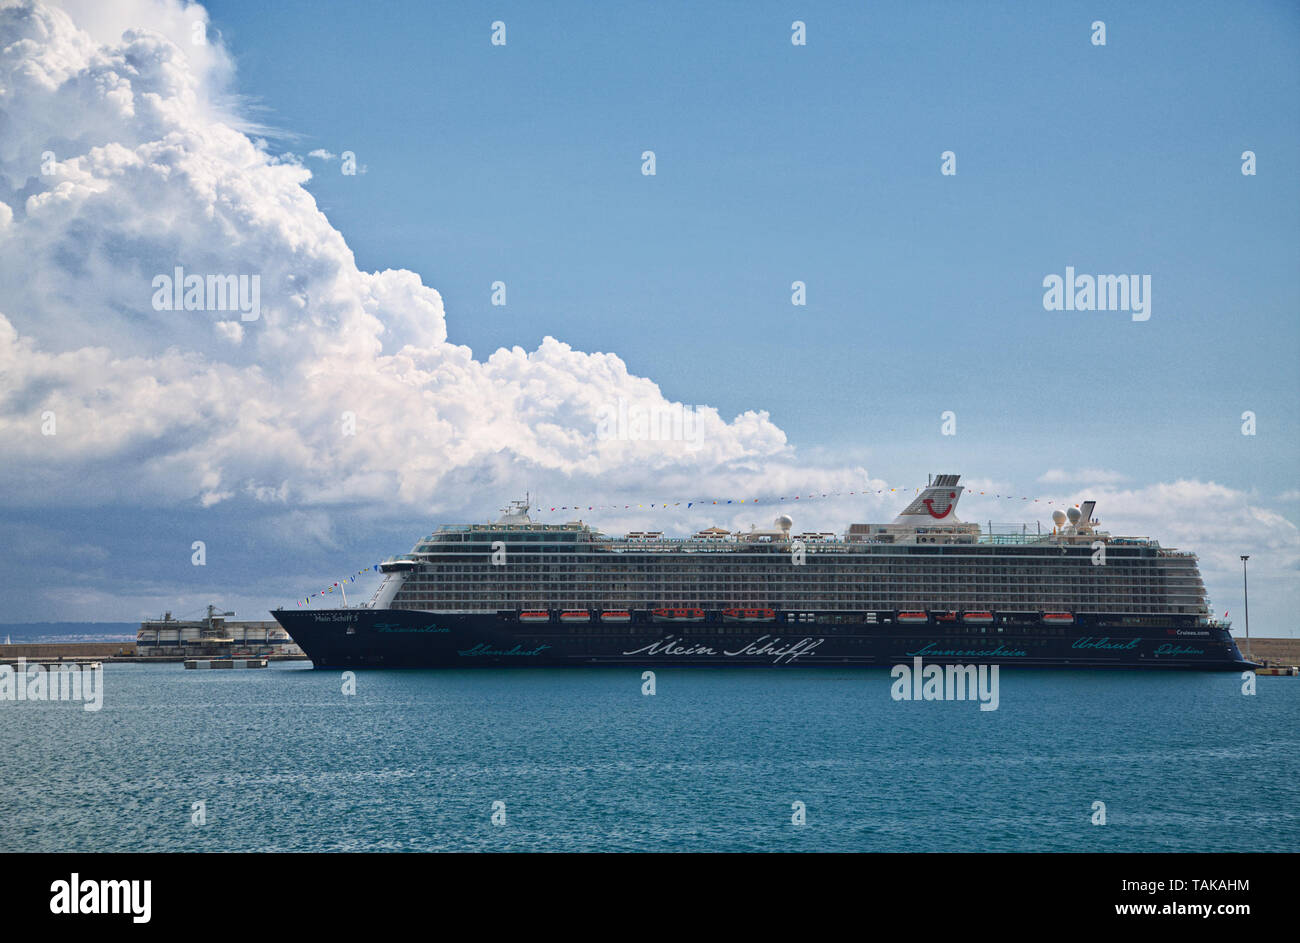 PALMA, ESPAGNE - 23 septembre 2016 : Mein Schiff est administré par TUI Cruises, basée en Allemagne. C'est une coentreprise entre la société allemande du tourisme TUI Banque D'Images